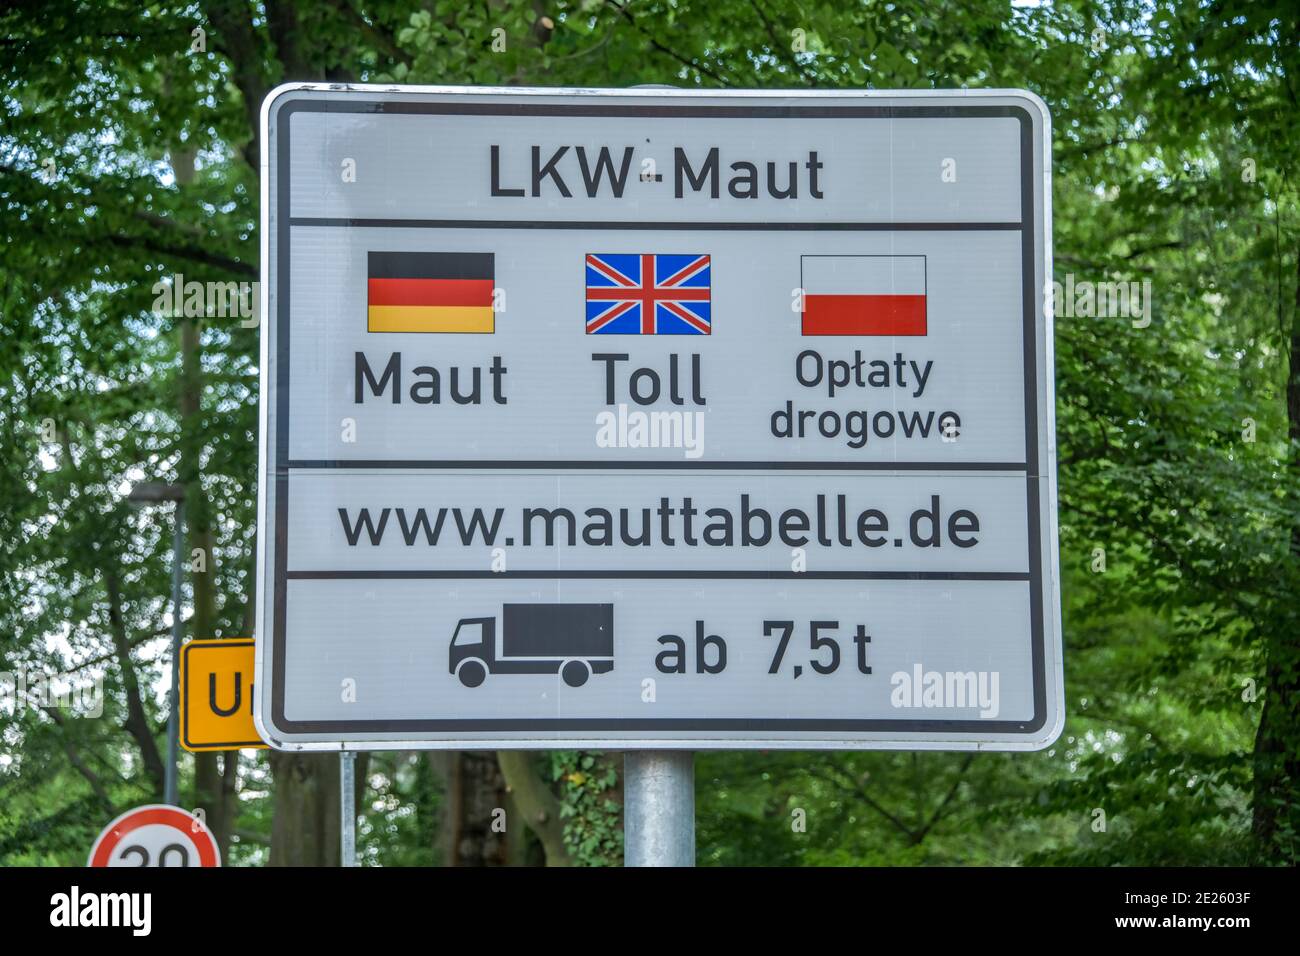 Grenze, Schild LKW-Maut, Bad Muskau, Sachsen, Deutschland Stock Photo